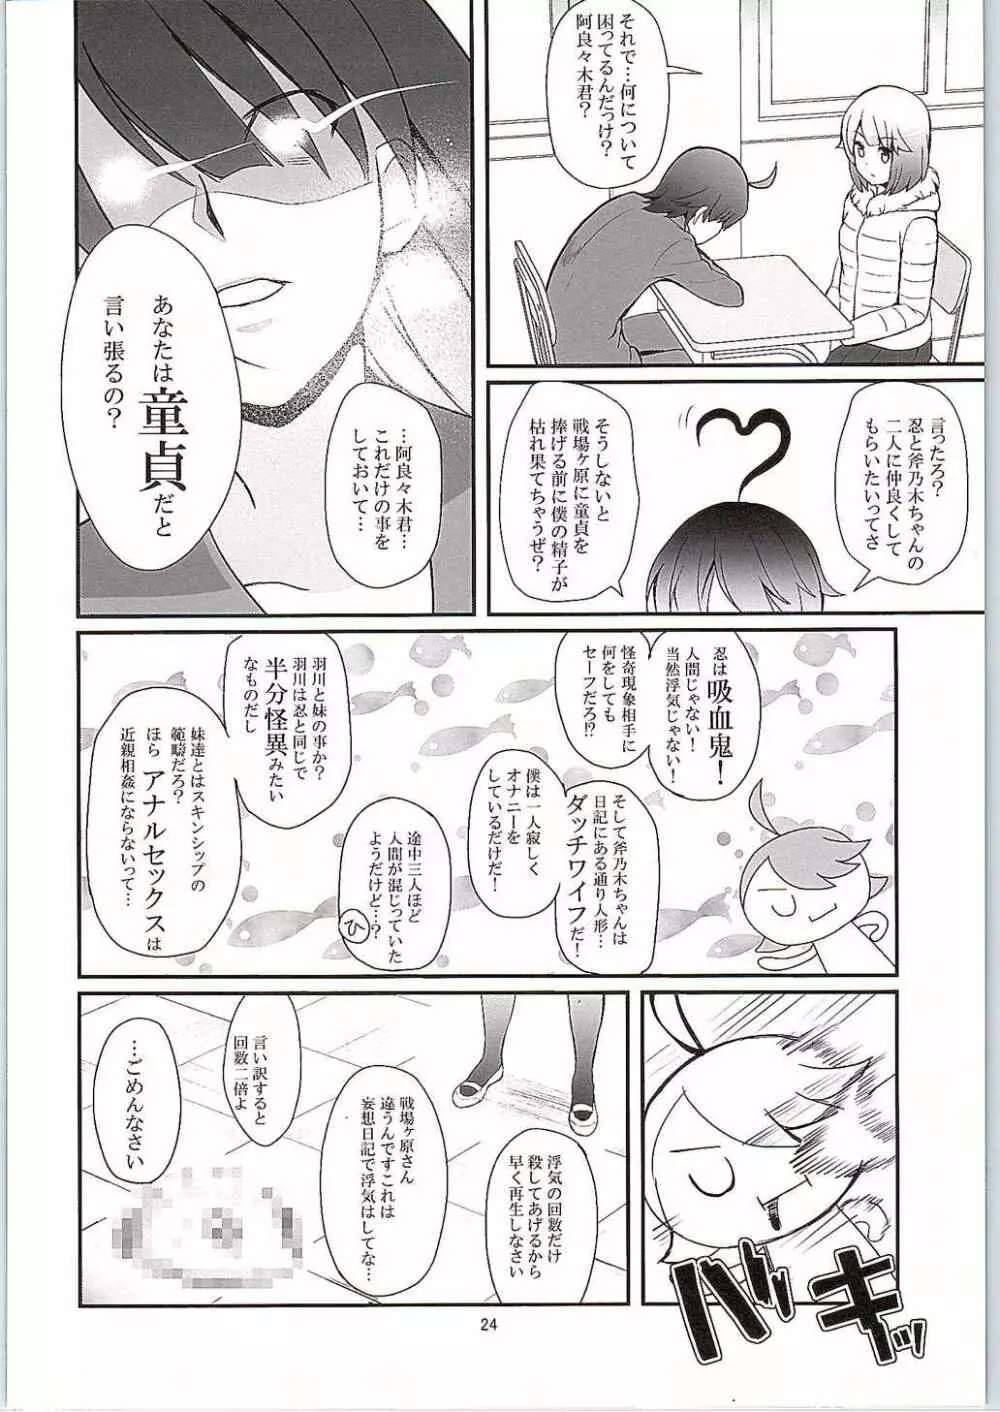 パチ物語 Part10 こよみダイアリー 23ページ